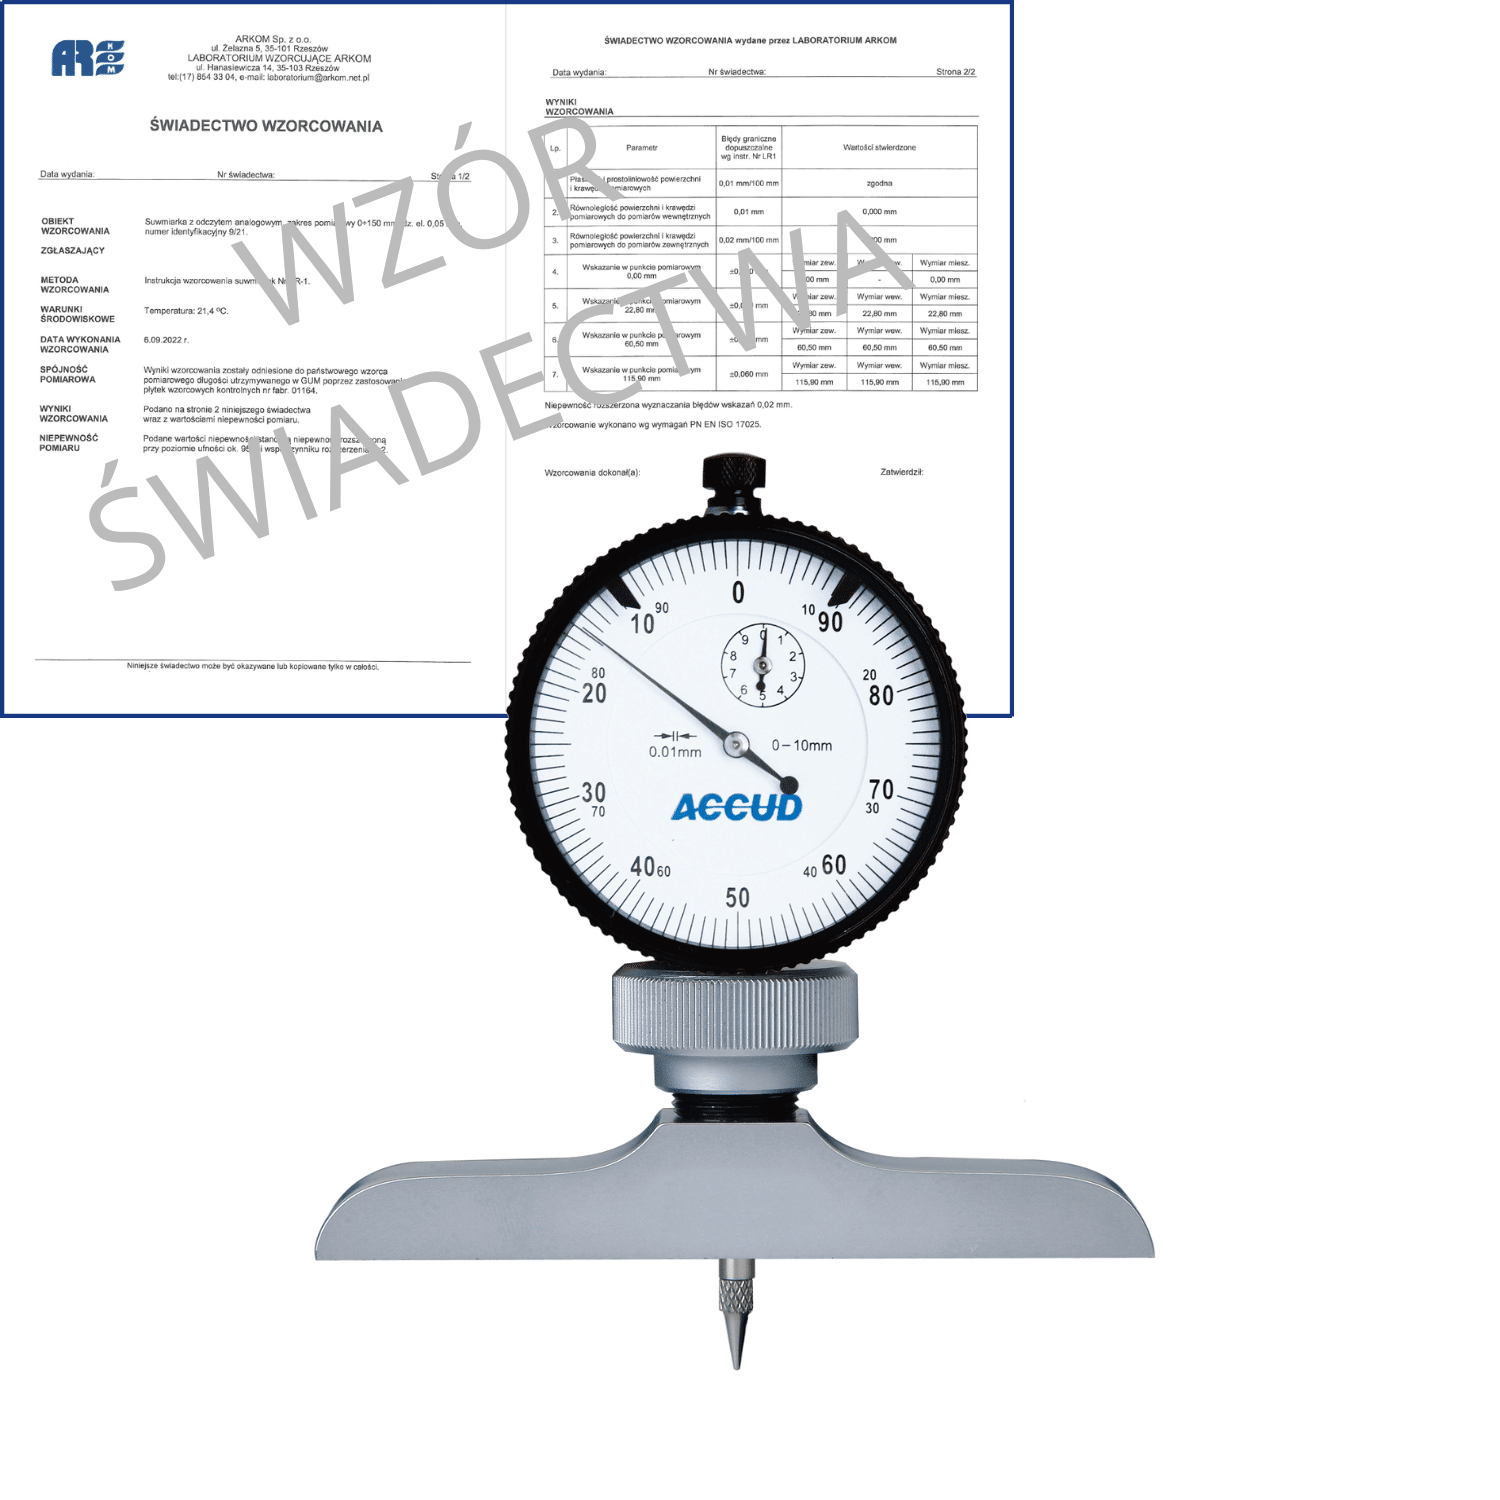 ACCUD głębokościomierz zegarowy 0-10/0.01mm  podstawa 101.5x17mm + świadectwo wzorcowania 291-010-12 WZORC (Zdjęcie 1)